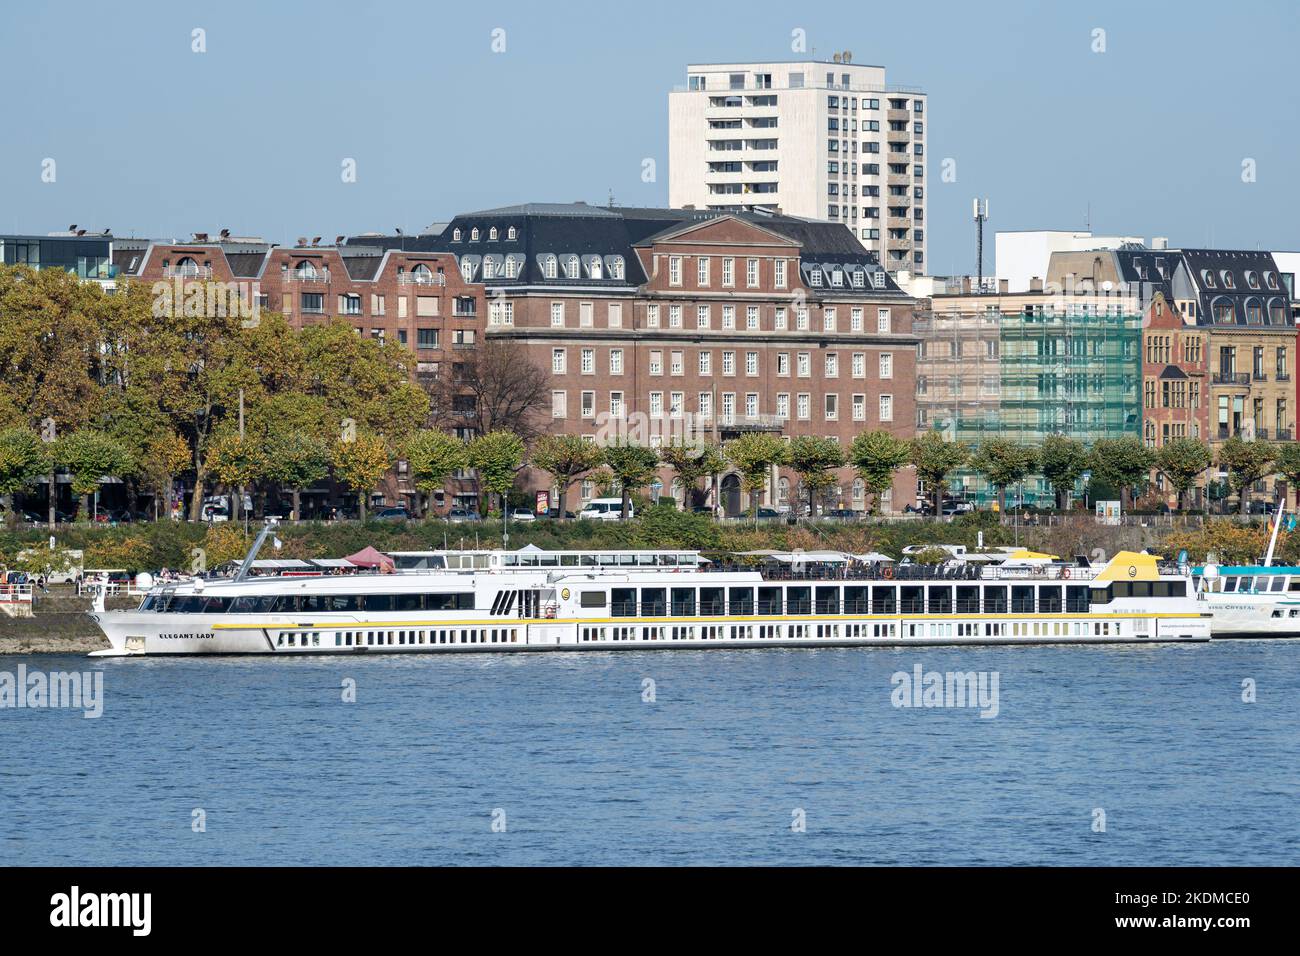 Flusskreuzfahrtschiff ELEGANT LADY in Köln, Deutschland Stockfoto